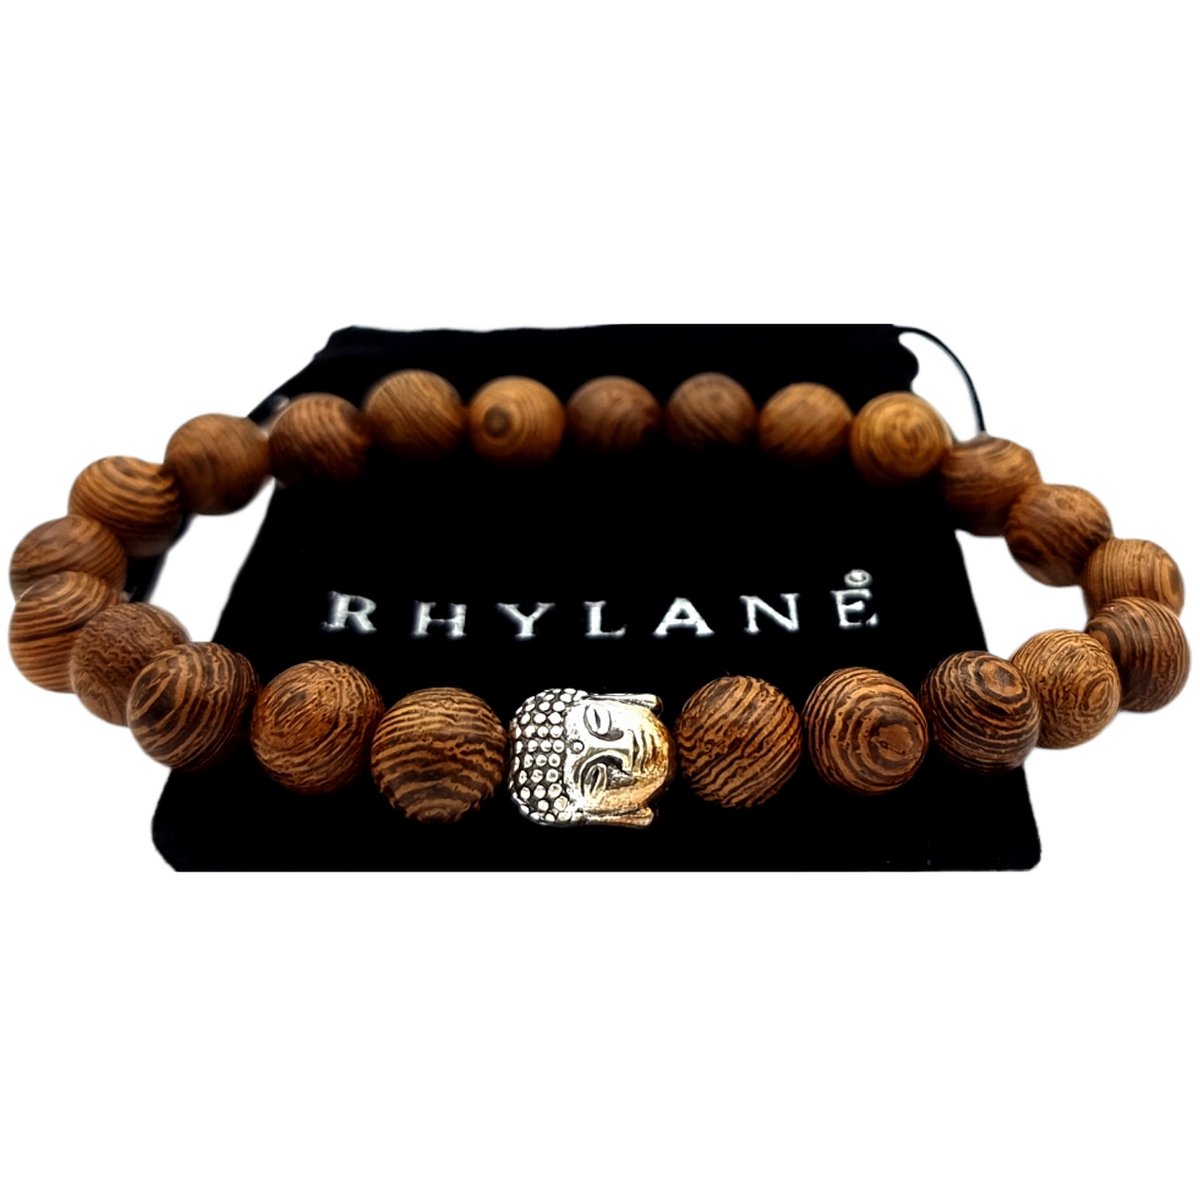 Rhylane – Boeddha Armband Sandelhout – Lichtbruin – L 20 cm / B 8 mm